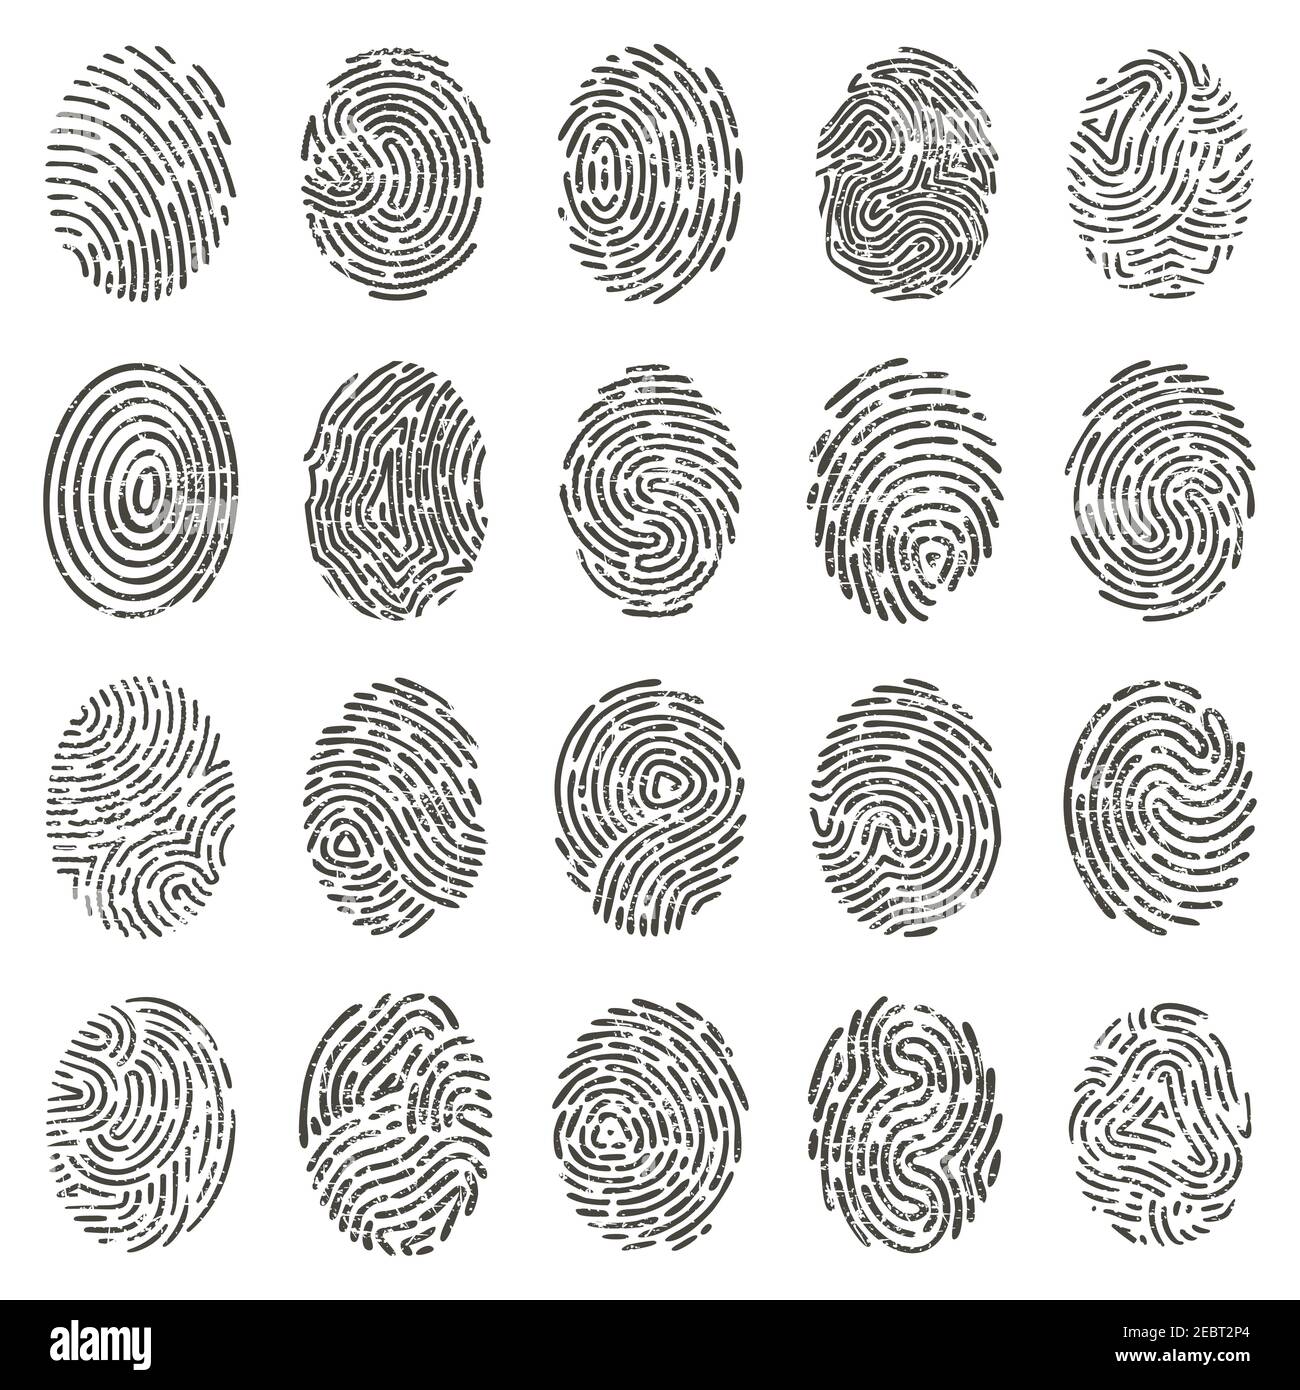 Impronte biometriche. Grunge umano singole impronte di dita, linee biometriche di pollice e segni di mano. Illustrazione vettoriale di identificazione delle impronte digitali Illustrazione Vettoriale